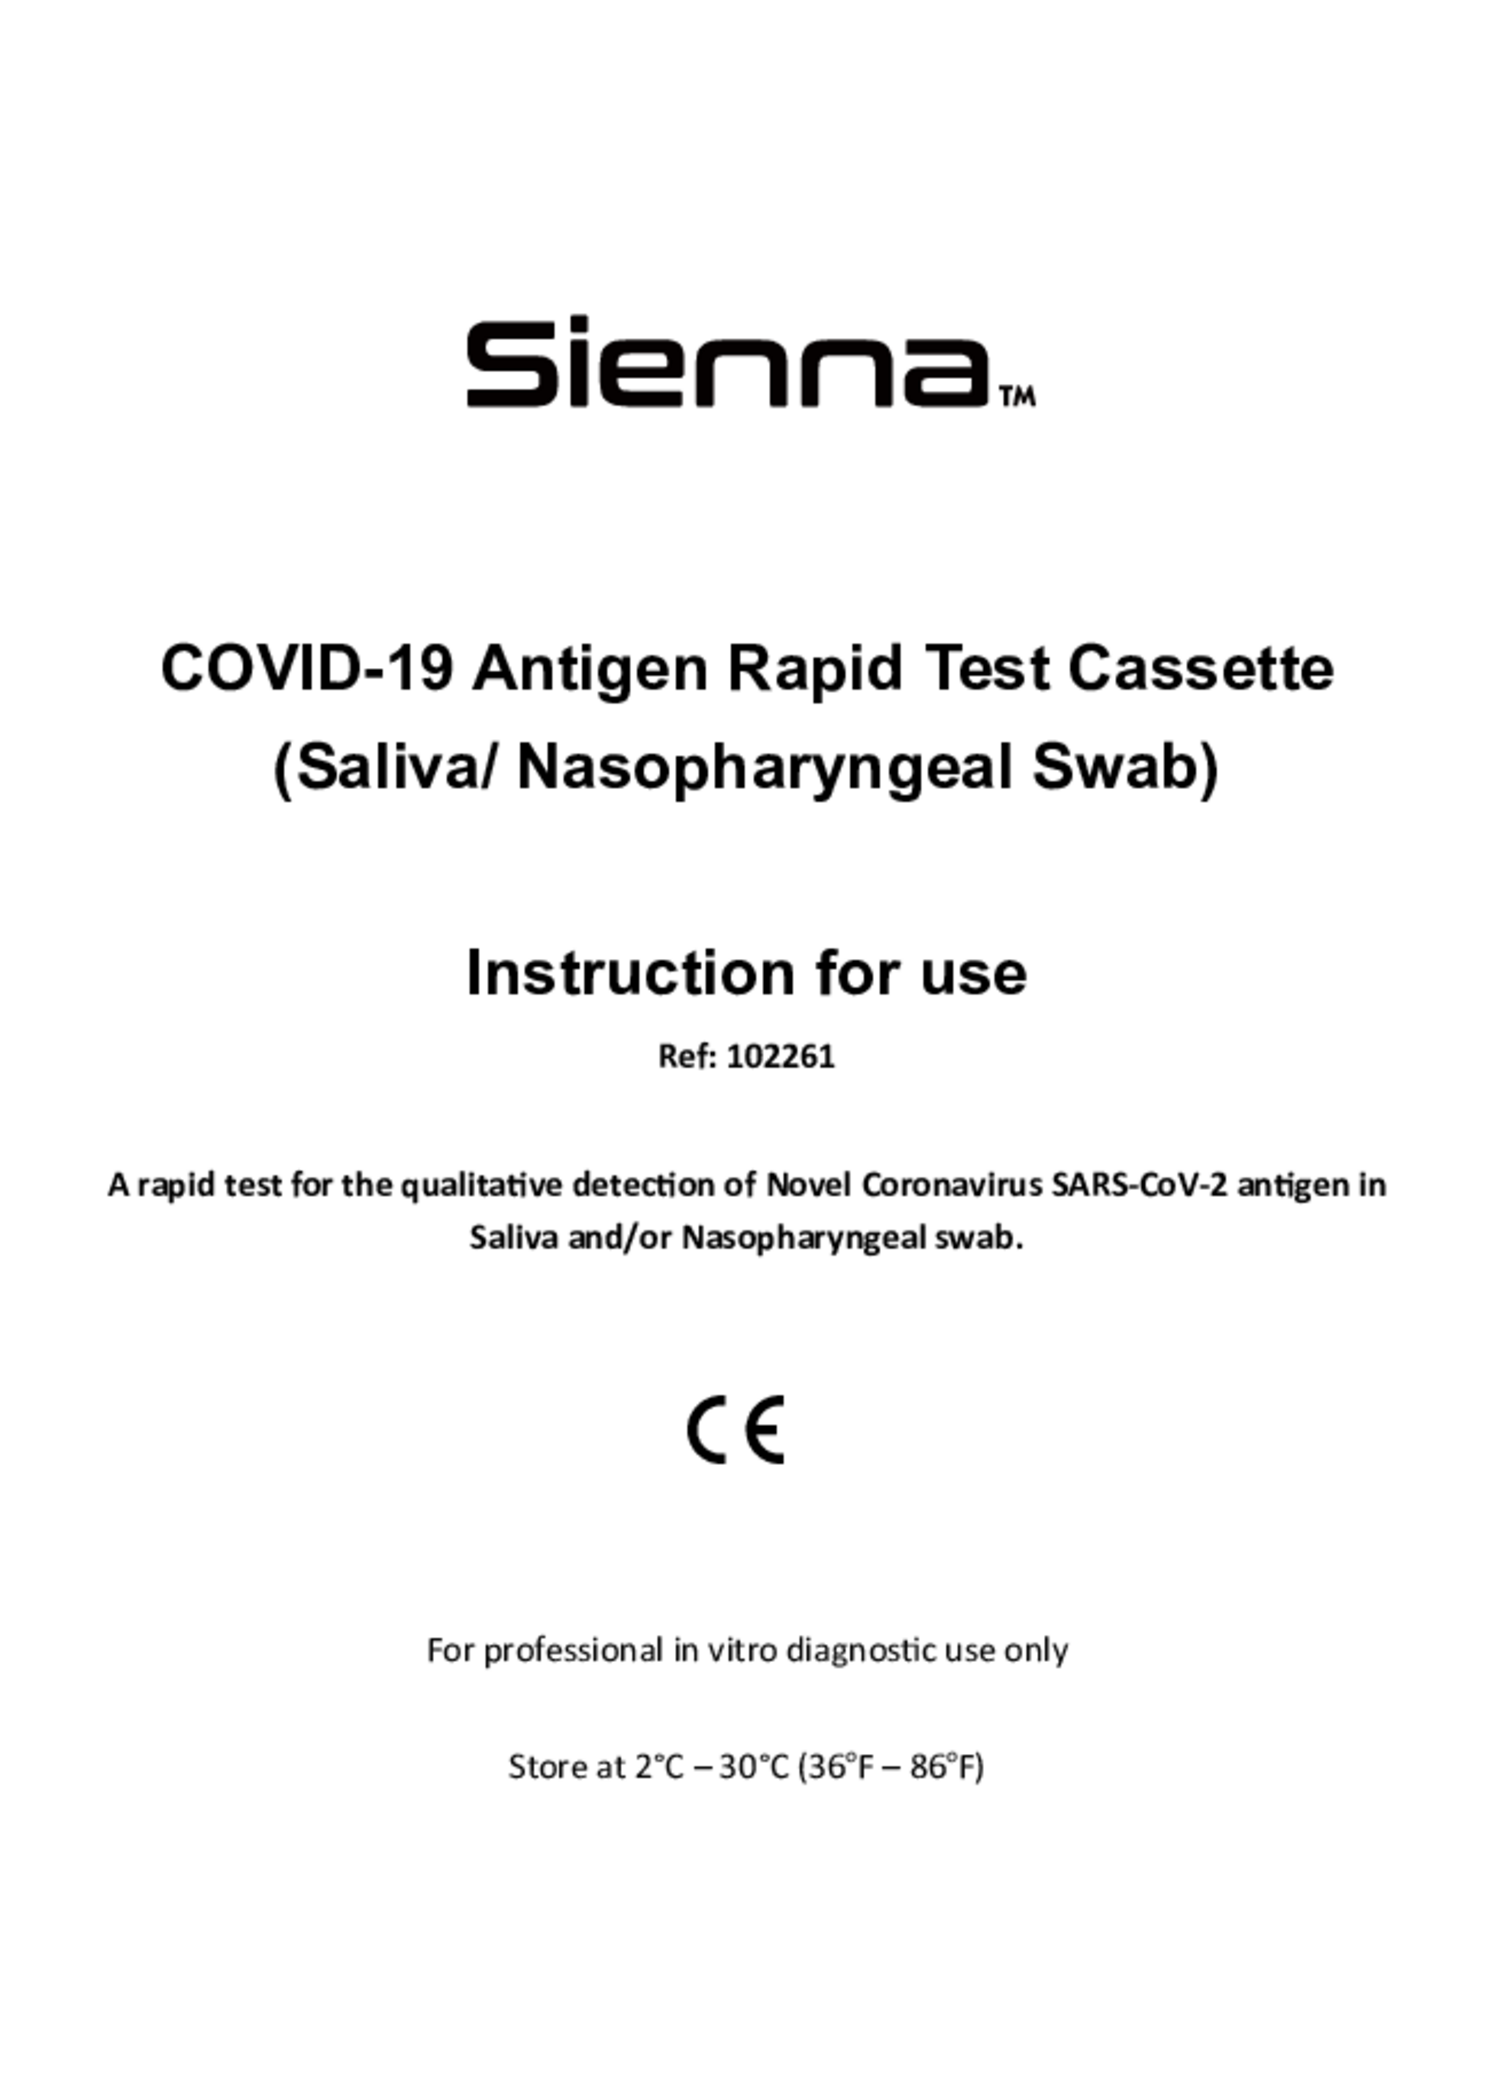 Sienna Covid19 Swab Test afbeelding van document #1, gebruiksaanwijzing